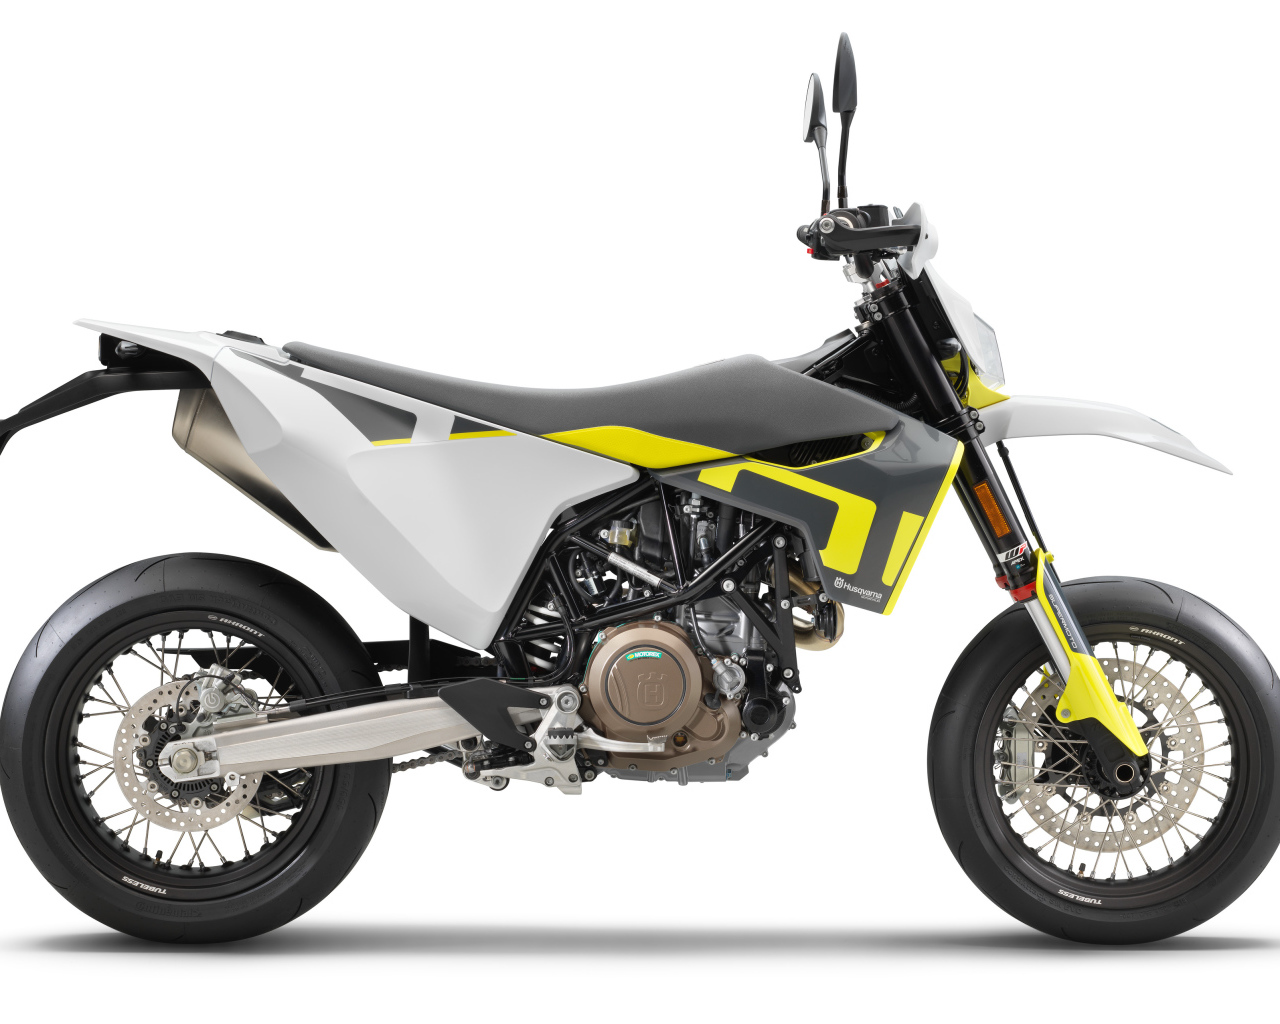 Гоночный мотоцикл Husqvarna 701 Supermoto, 2021 года на белом фоне